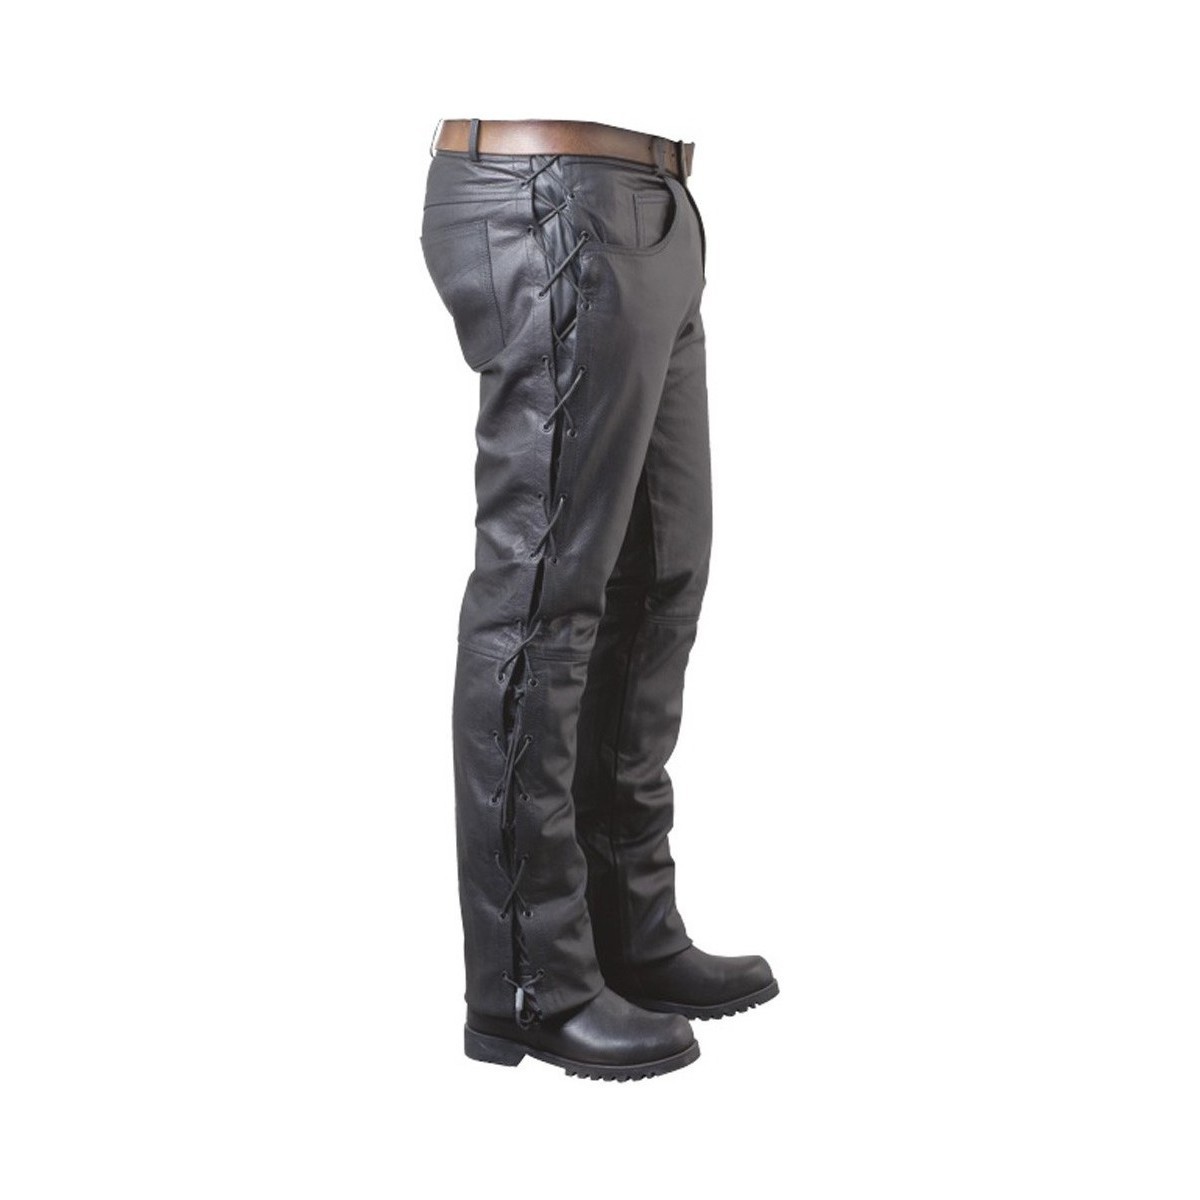 Vêtements Homme Pantalons Pallas Cuir Pantalon en cuir avec lacets ref 02702 noir Noir